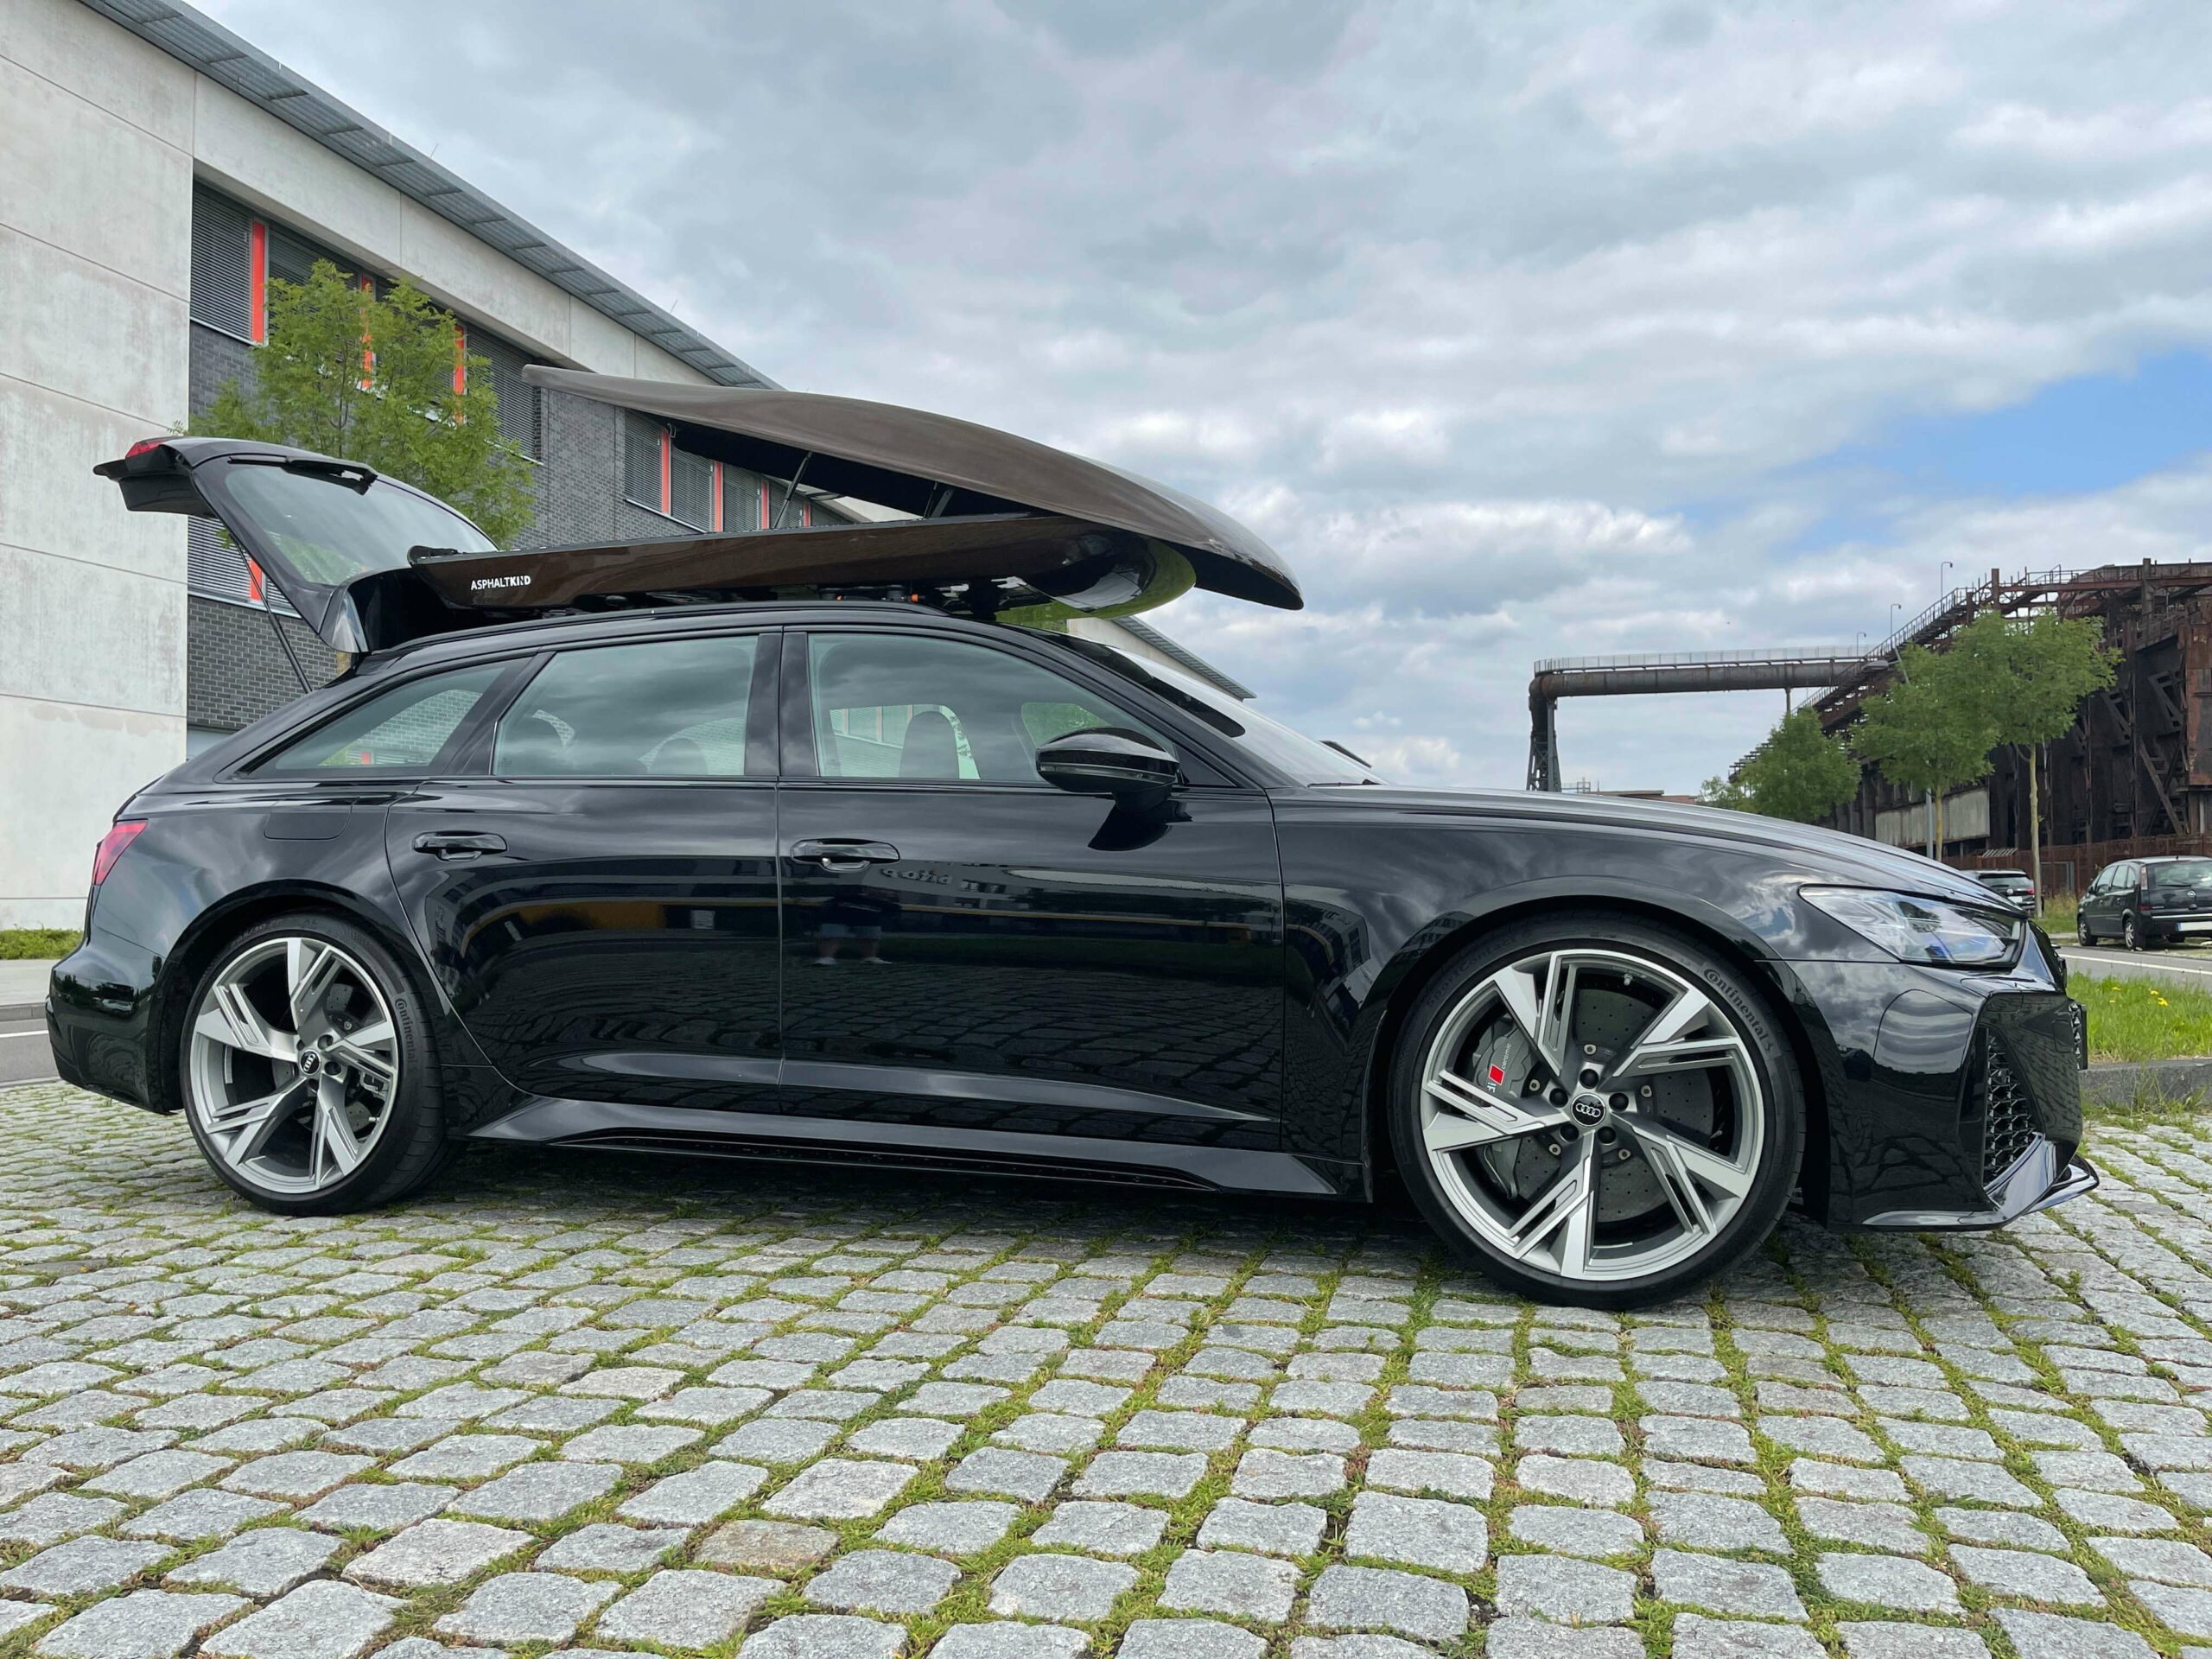 https://asphaltkind.de/wp-content/uploads/2021/08/Asphaltkind_Dachbox-Audi-RS6-scaled.jpg